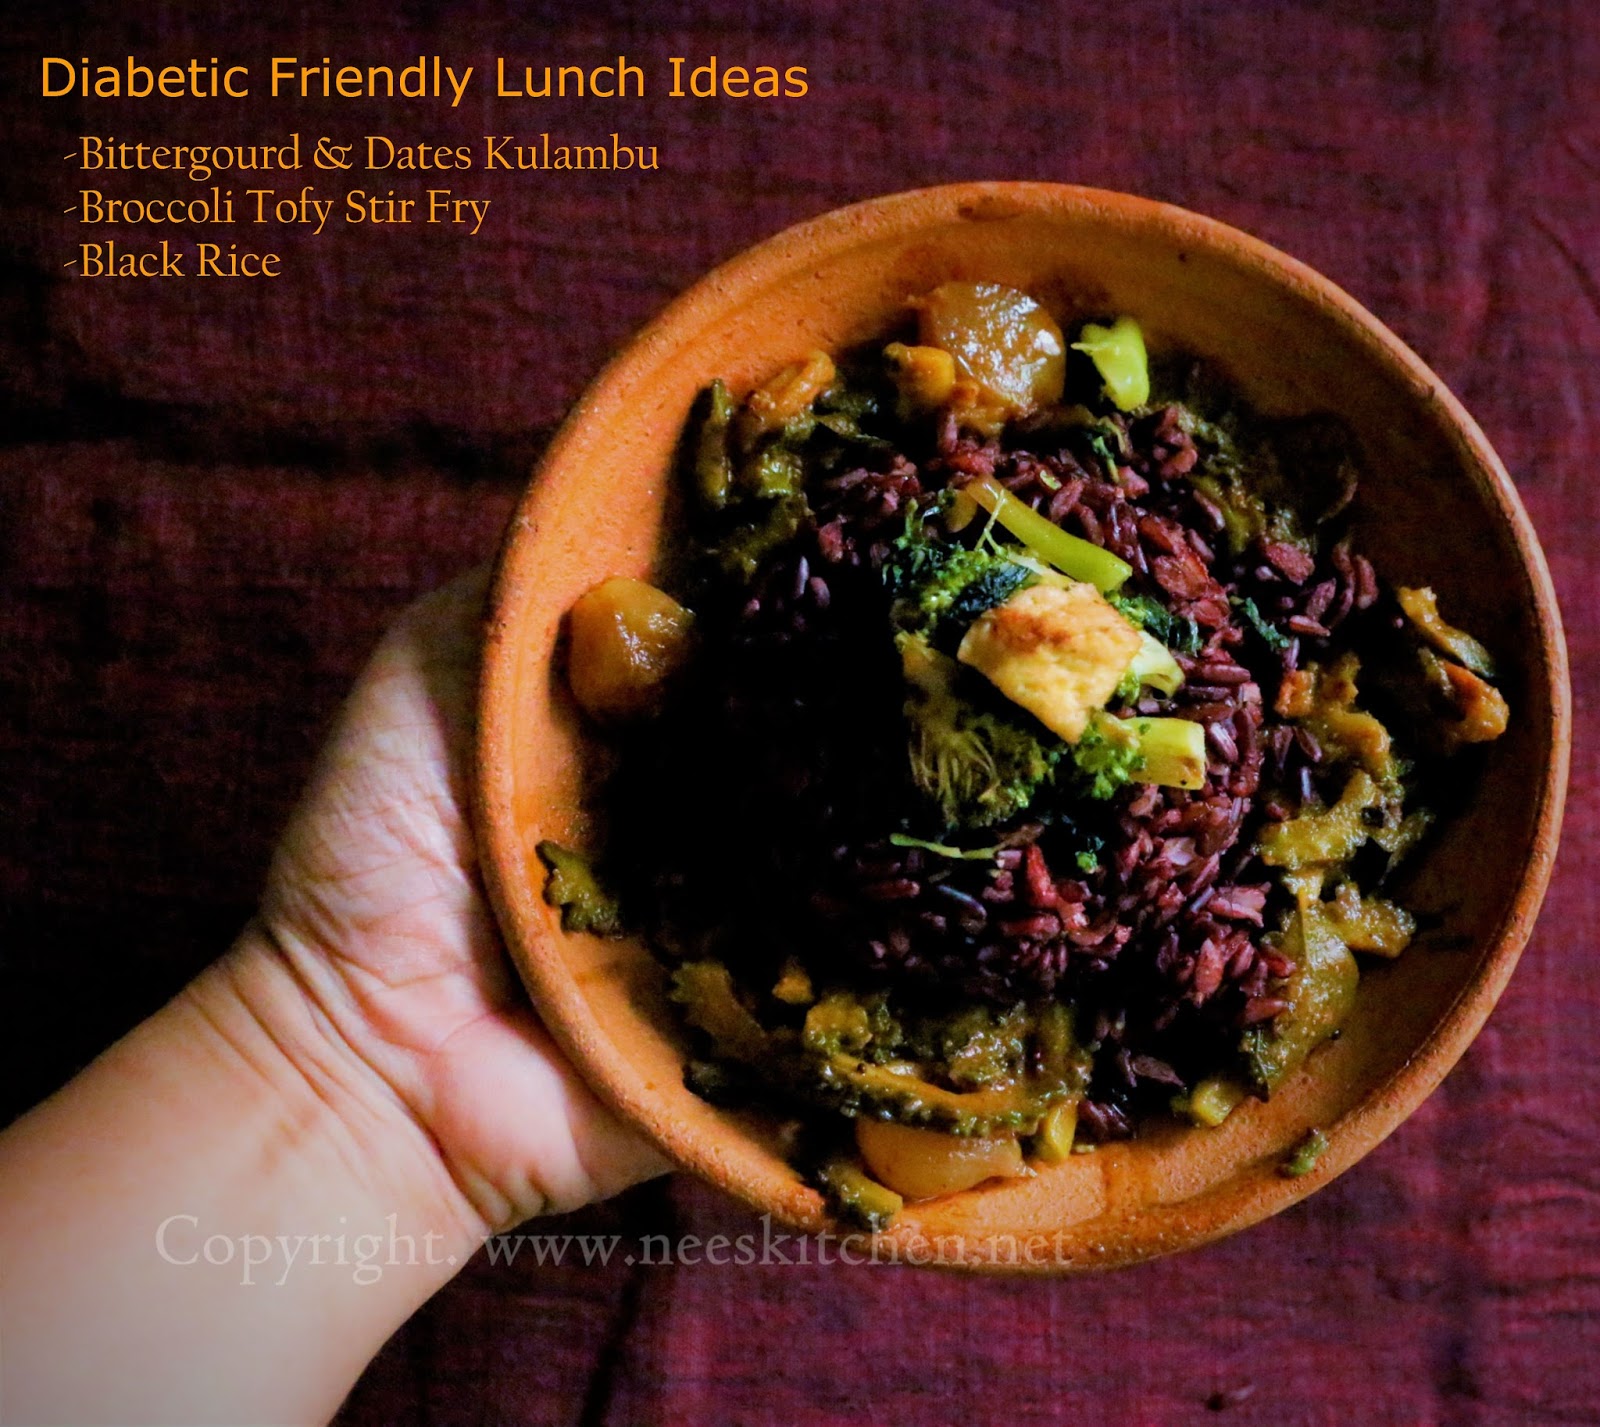 Diabetic Friendly Lunch Ideas 4 - Nee's Kitchen